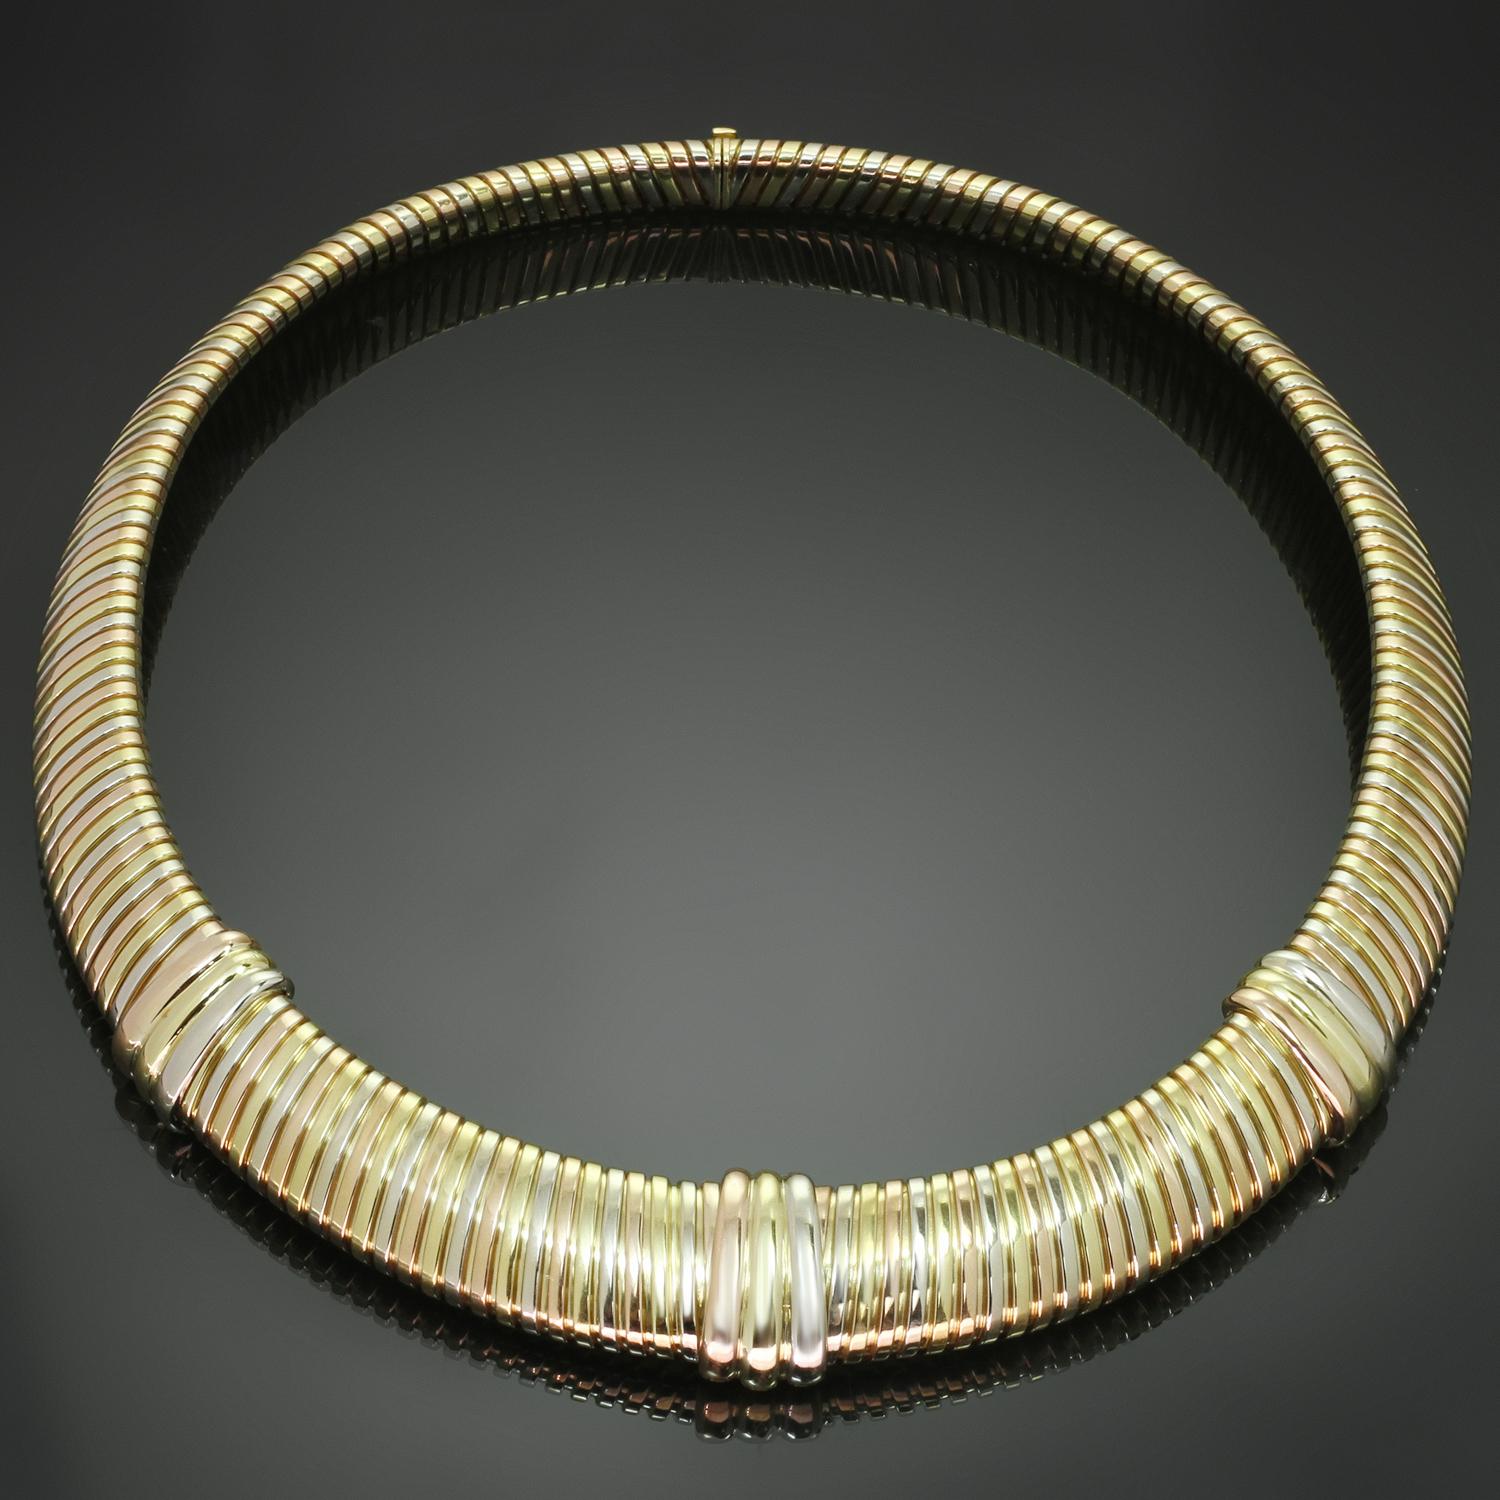 Diese wunderschöne Cartier Trinity Halskette erinnert an die ikonische Tubogas-Kollektion und zeichnet sich durch ein fließendes Gliederdesign aus, das aus 18 Karat Gelb-, Weiß- und Roségold gefertigt ist. Hergestellt in Frankreich in den 1980er